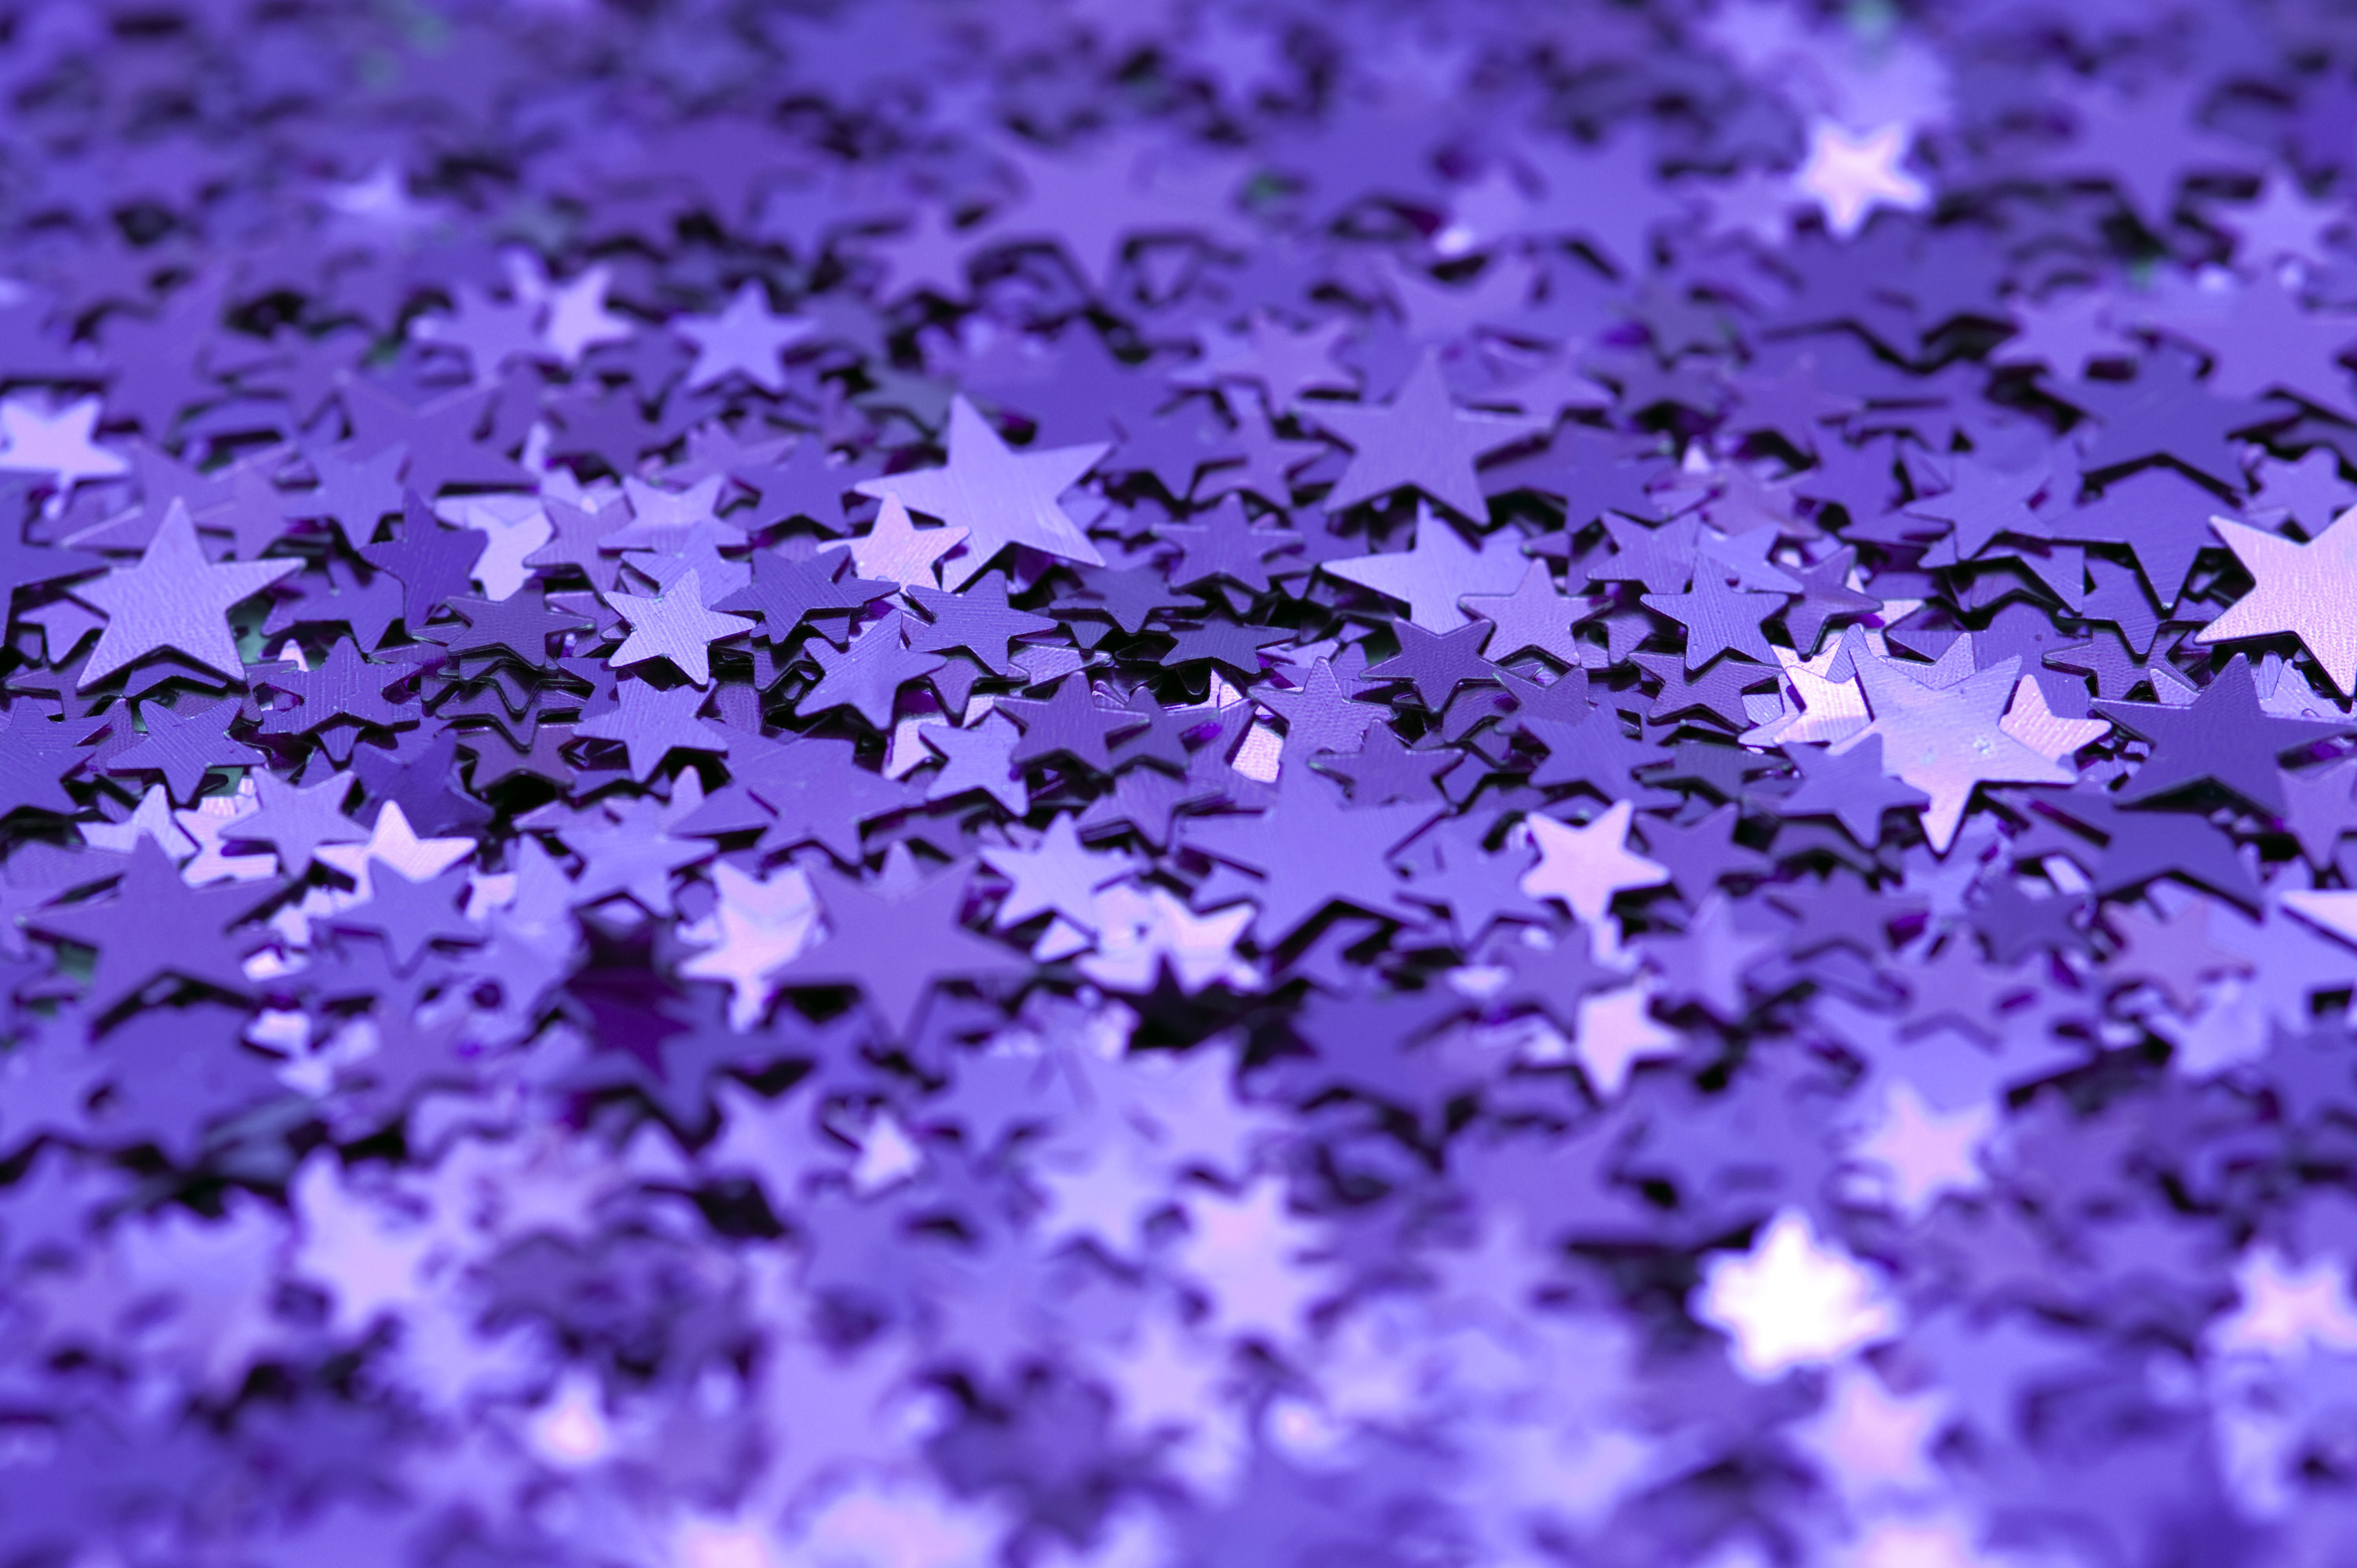 3000x1996 purple_glitter_backdrop: purple_glitter_backdrop